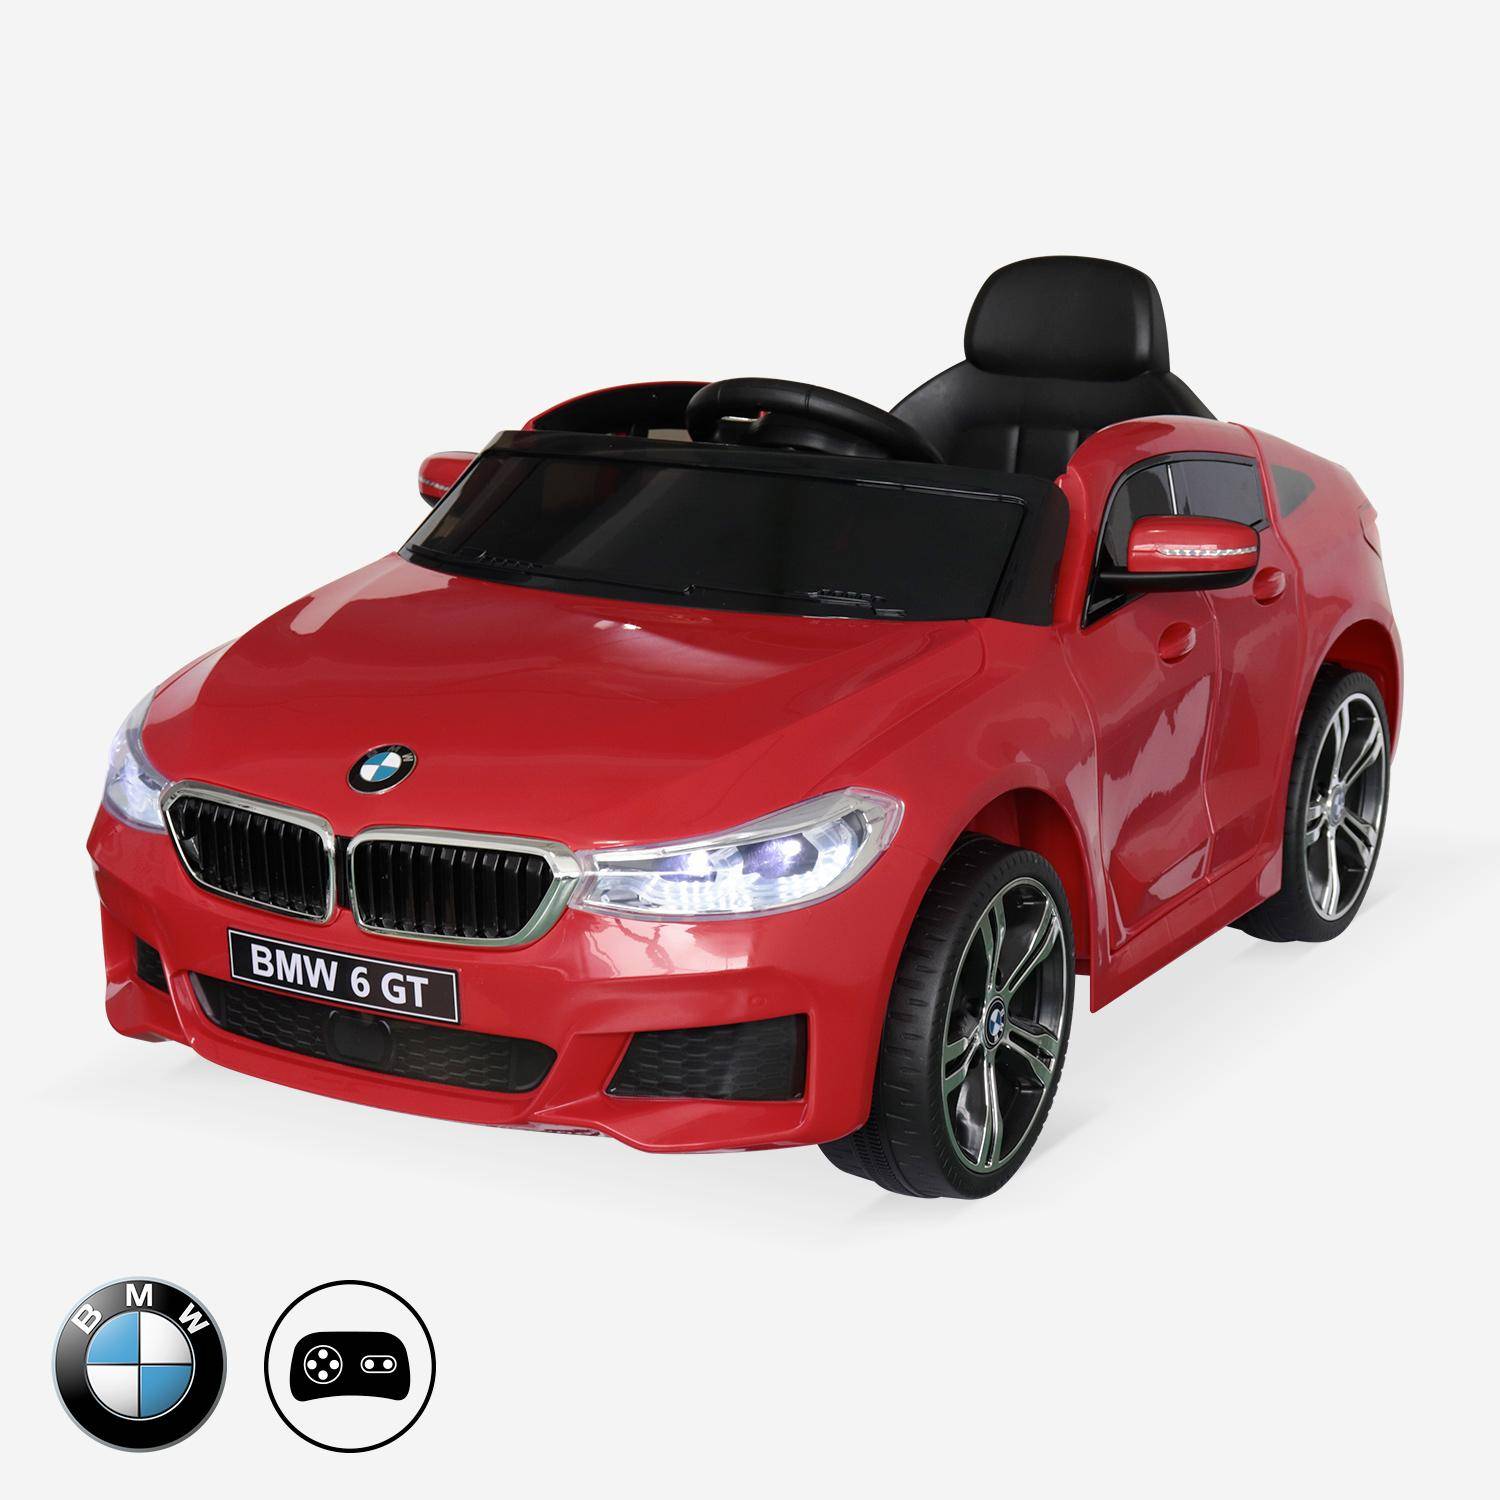 BMW Serie 6GT Gran Turismo rossa, macchina elettrica per bambini 12V 4 Ah, 1 posto, con autoradio e telecomando,sweeek,Photo1